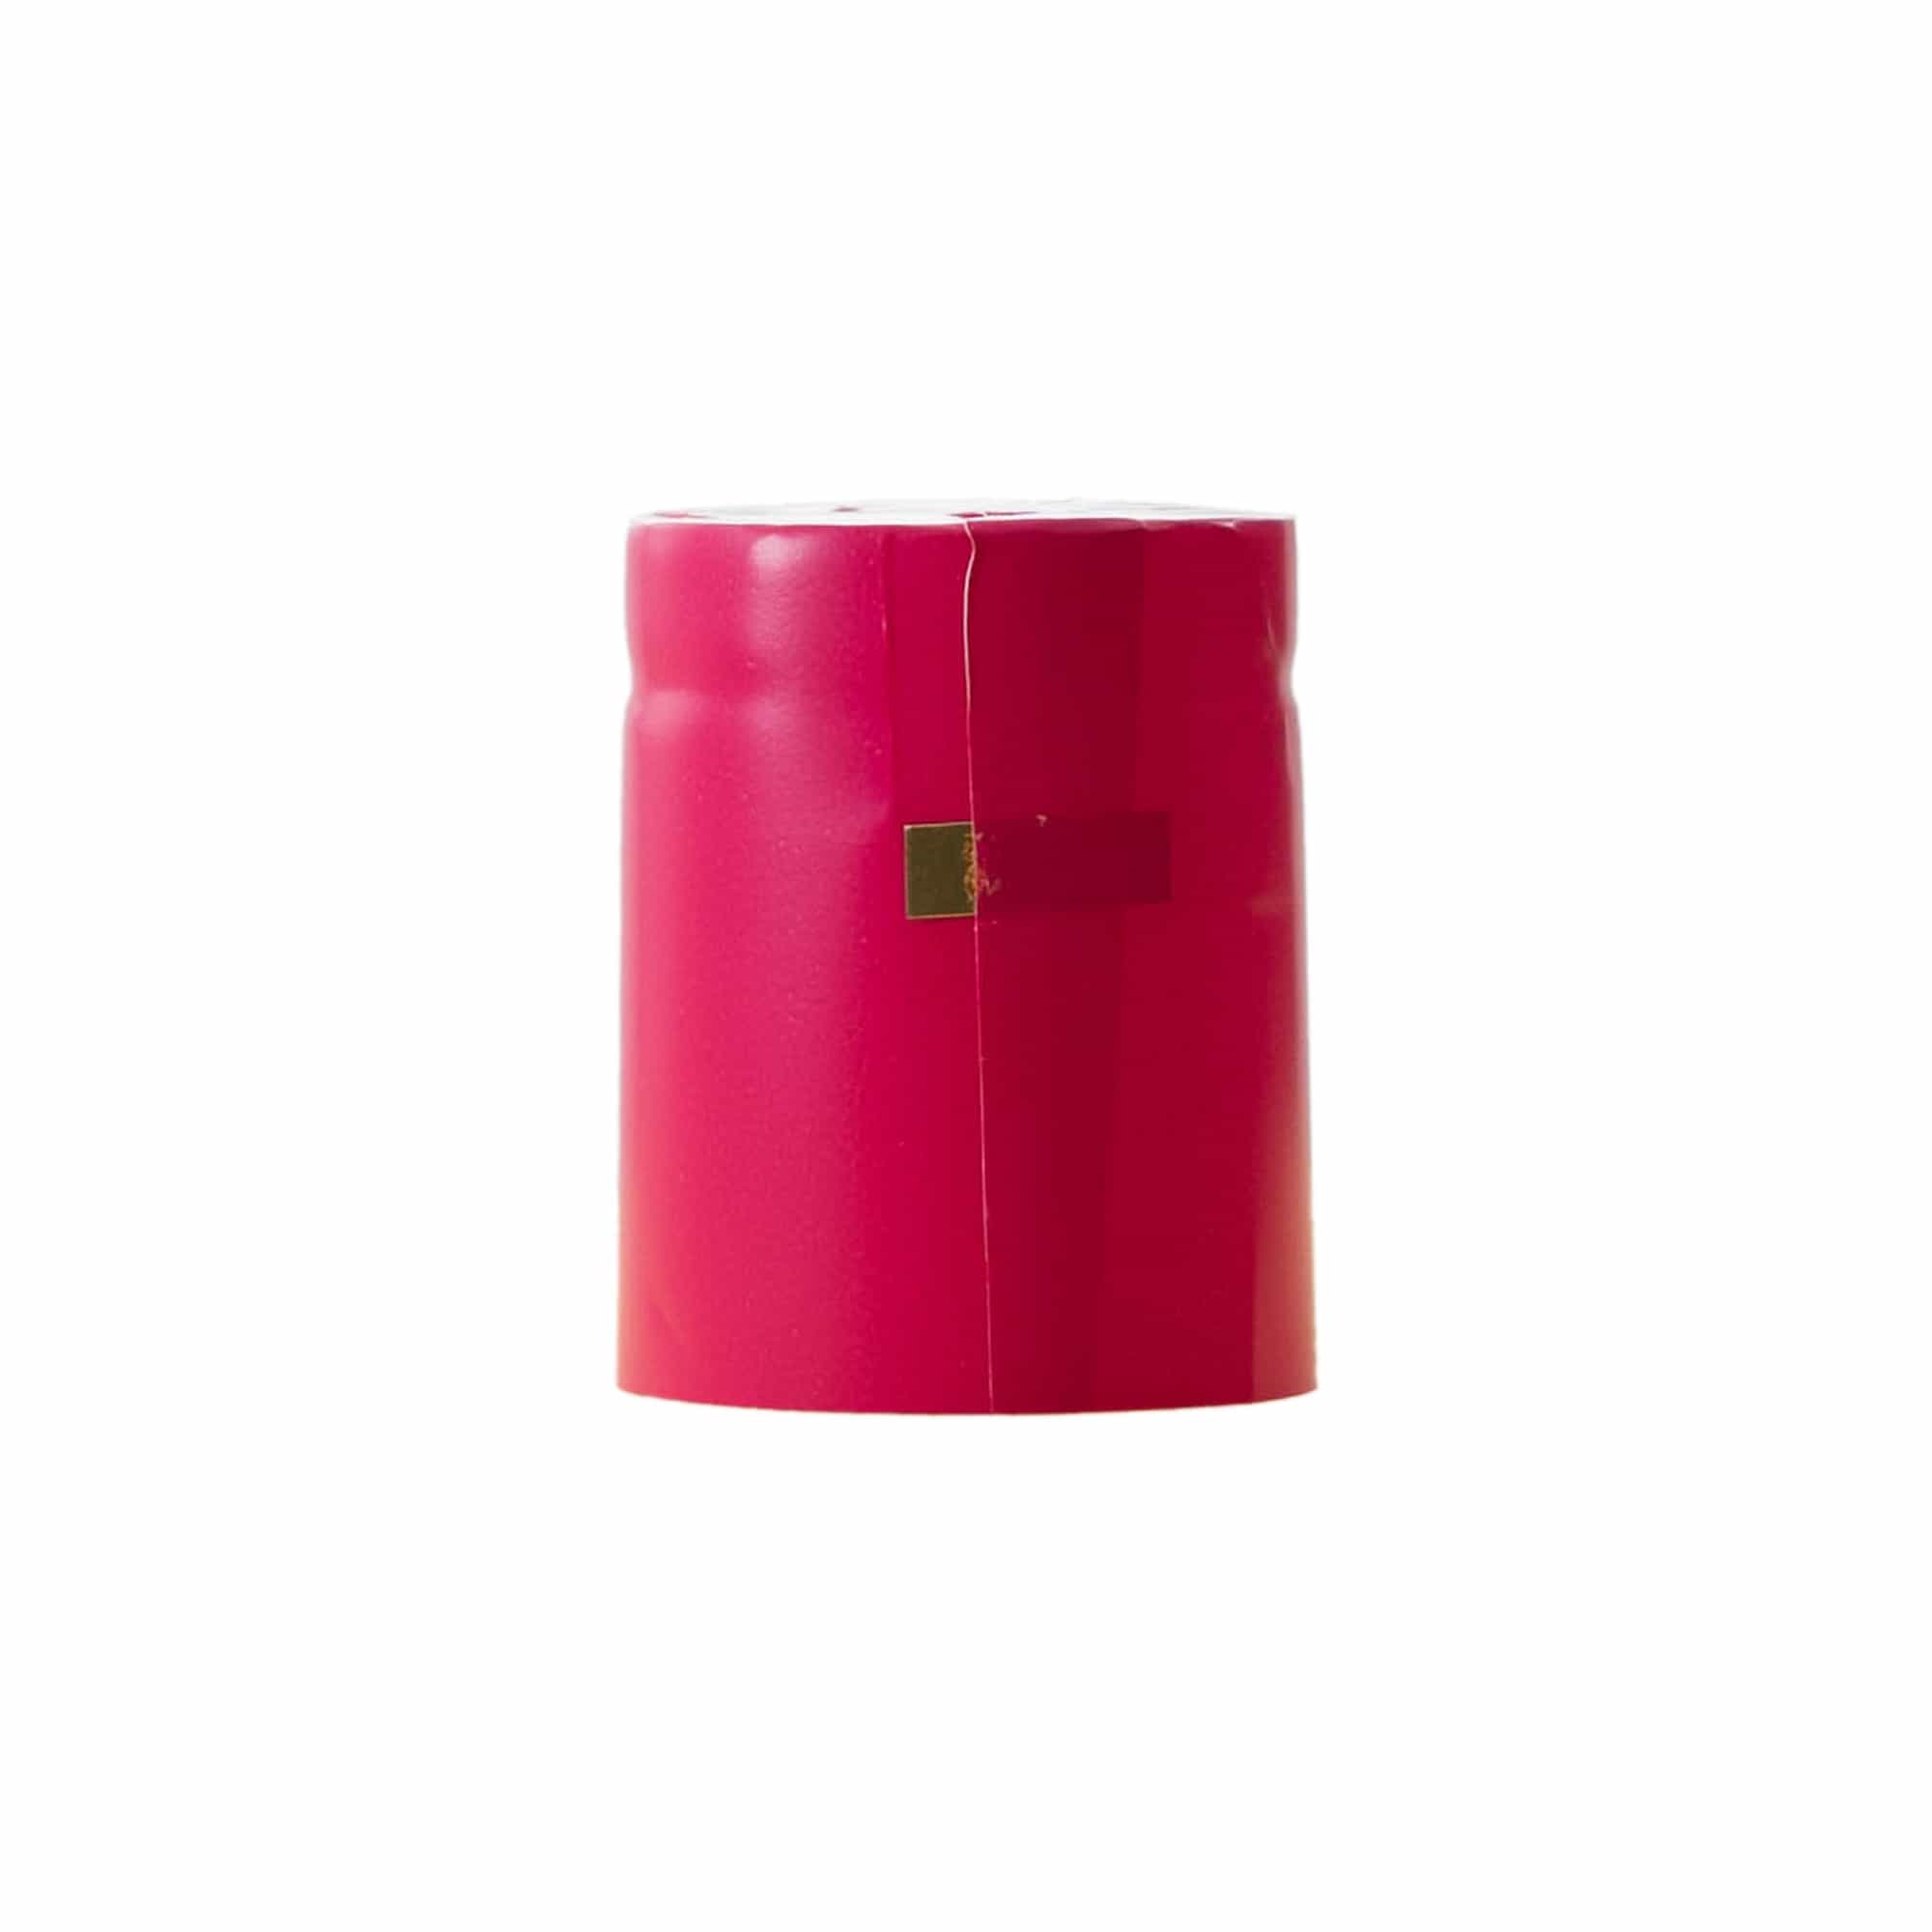 Kapturek termokurczliwy 32x41, tworzywo sztuczne PVC, kolor różowy